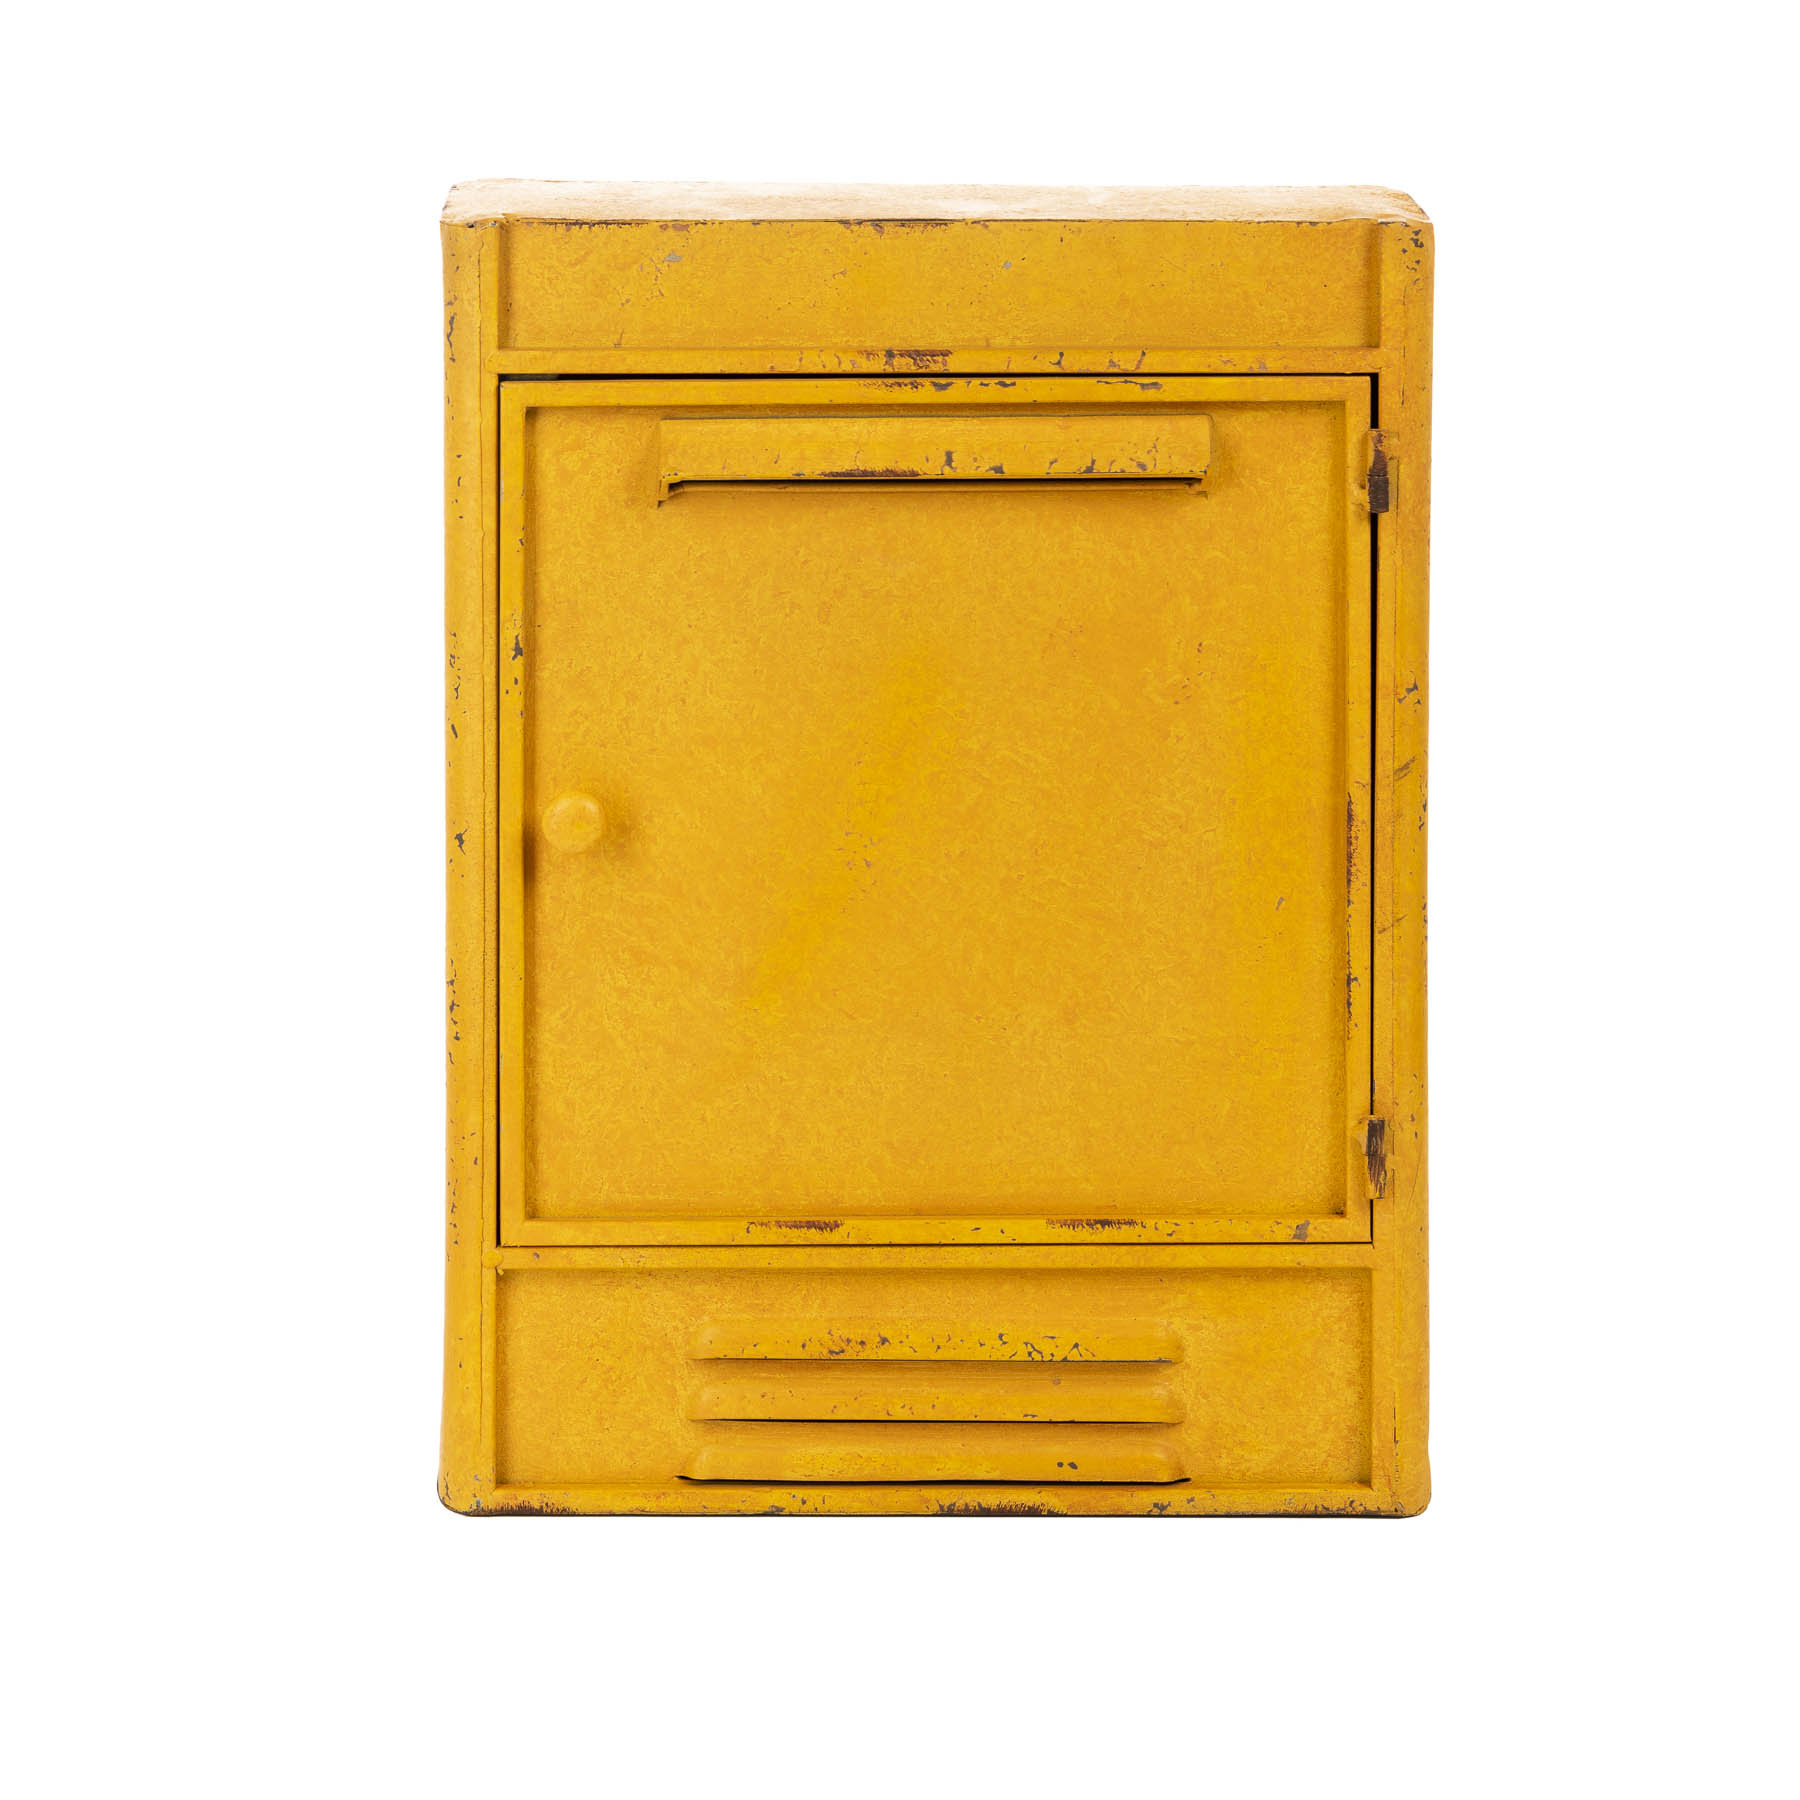 Allemaal Voorstellen Speeltoestellen Sleutelkastje retro geel | Industriële accessoires - Rootsmann